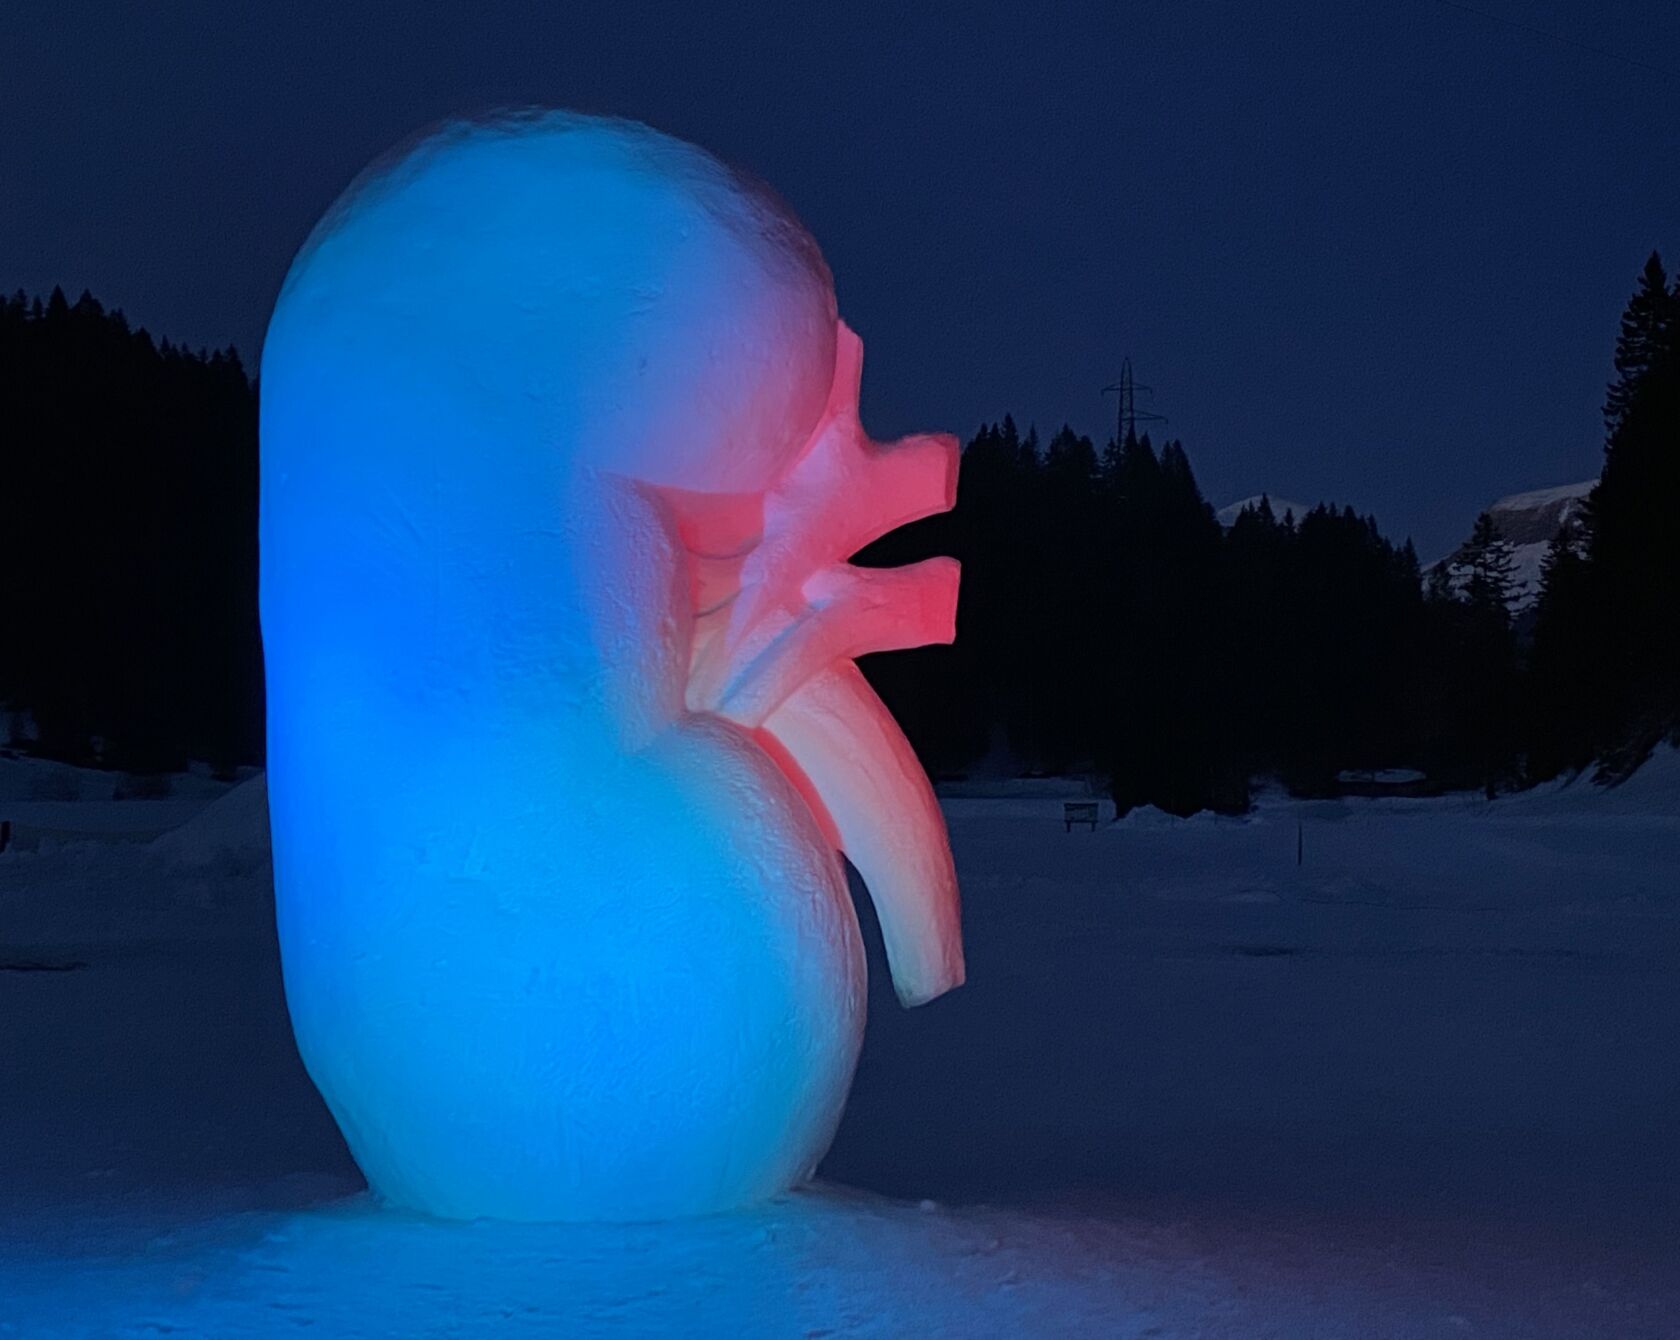 Diese mit drei Metern rekordverdächtig hohe Niere aus Schnee hat eine Botschaft: «Eine Niere reicht, um ein Leben zu retten».